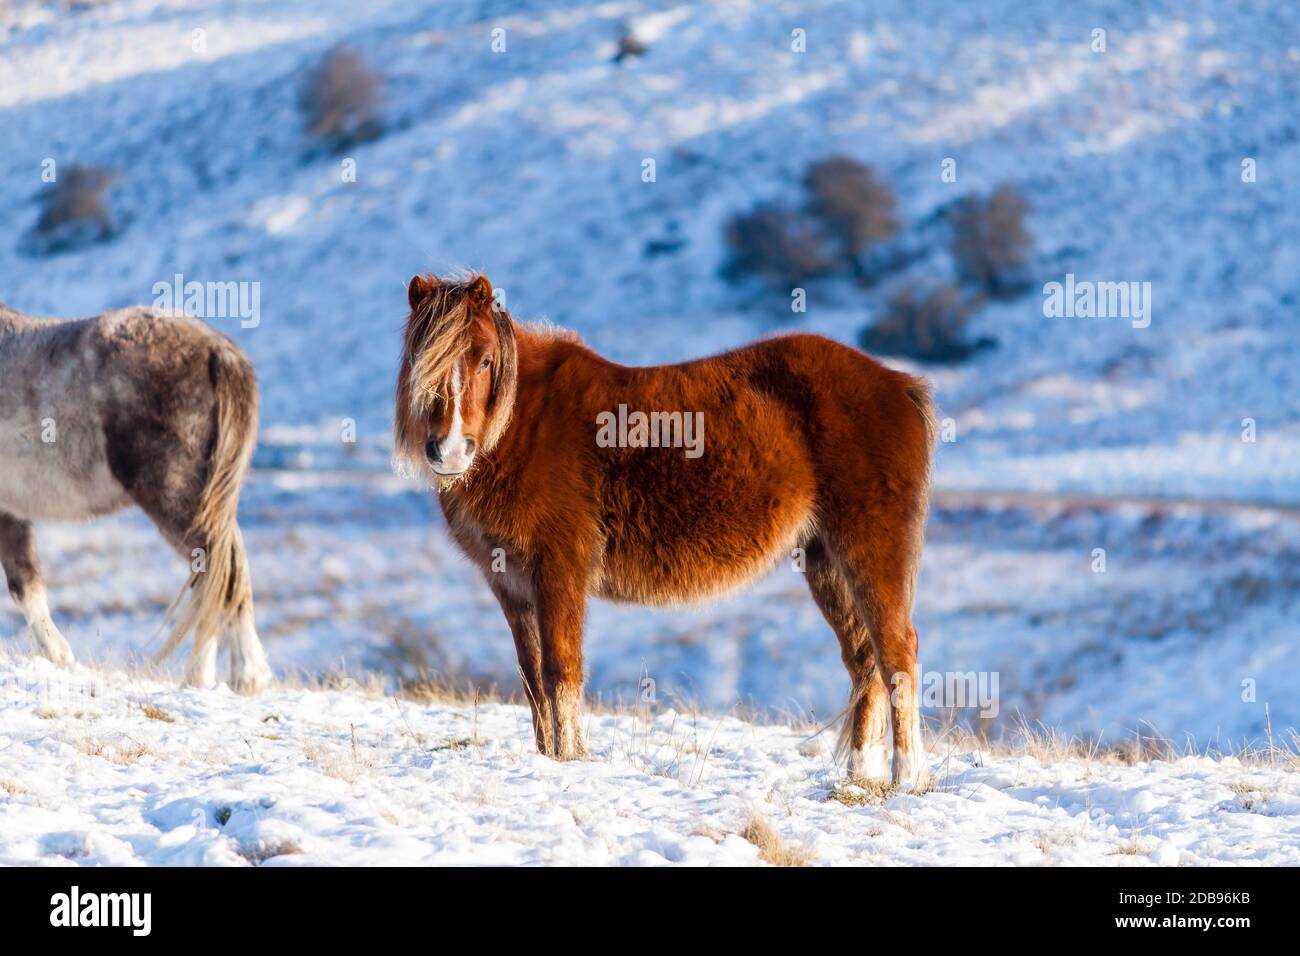 Ponis galeses salvajes en un paisaje frío, invernal y cubierto de nieve - Brecon Beacons, Gales Foto de stock